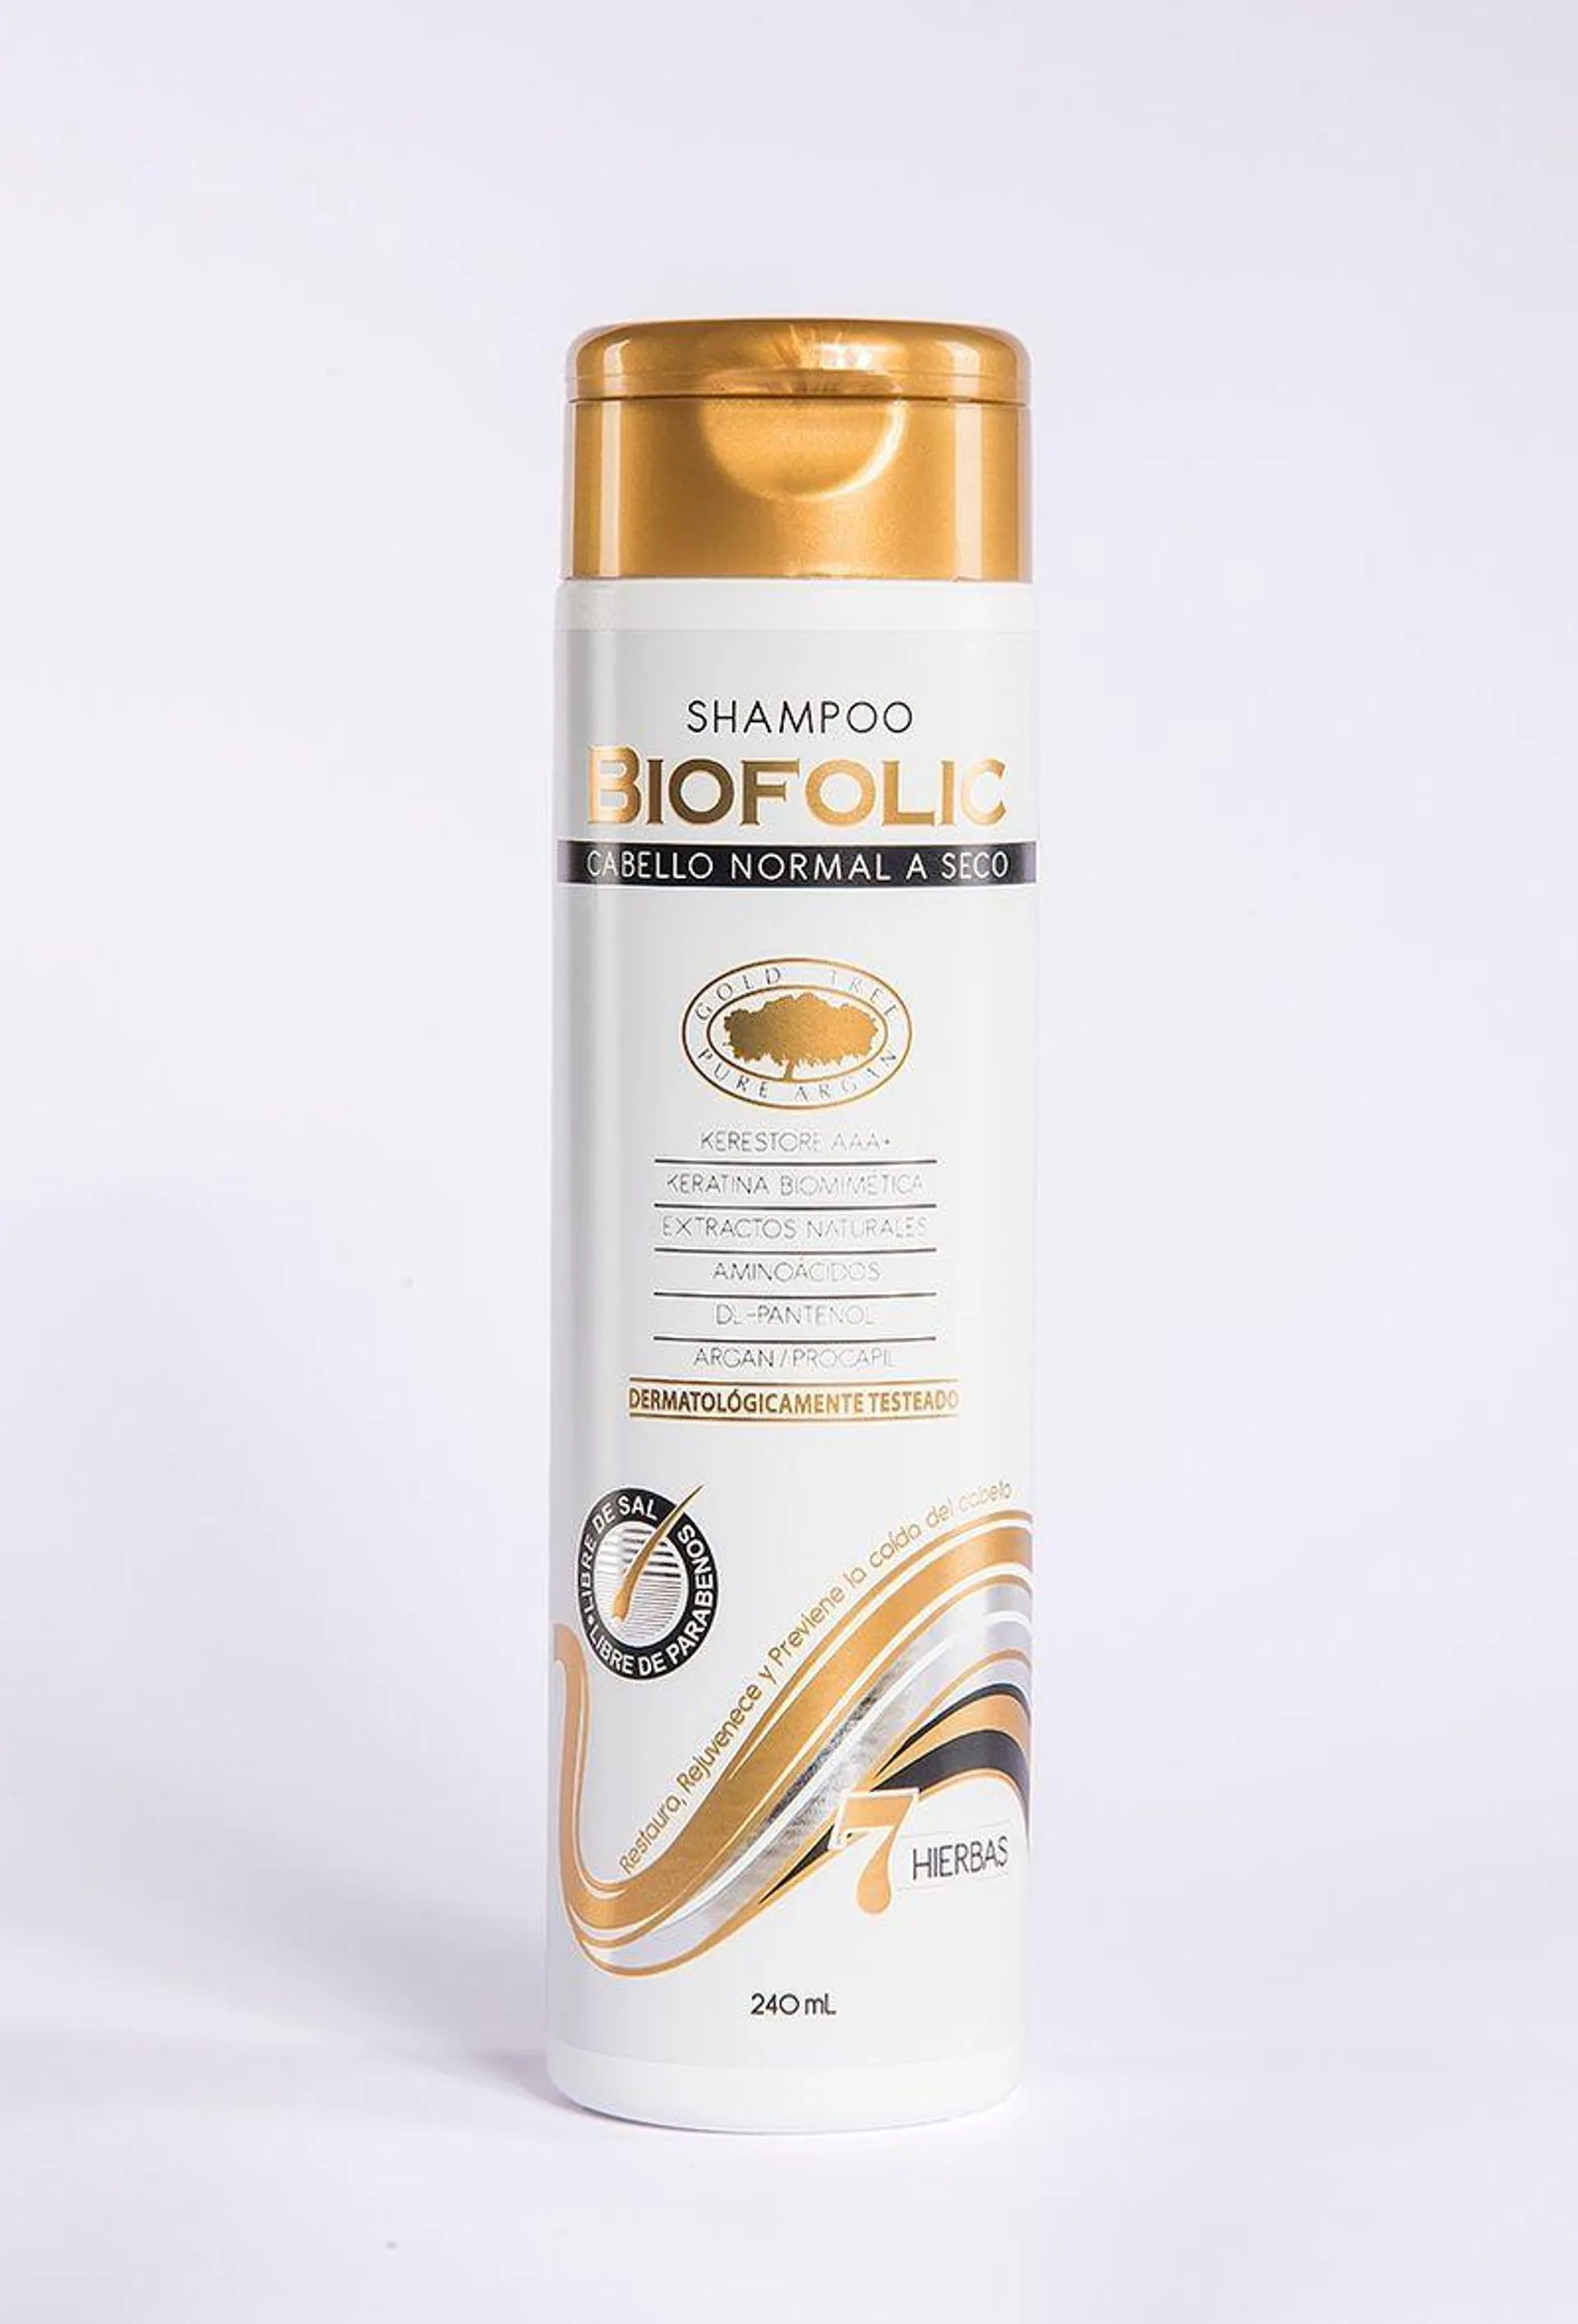 Shampoo Cabello Normal - Seco Biofolic 240 Ml